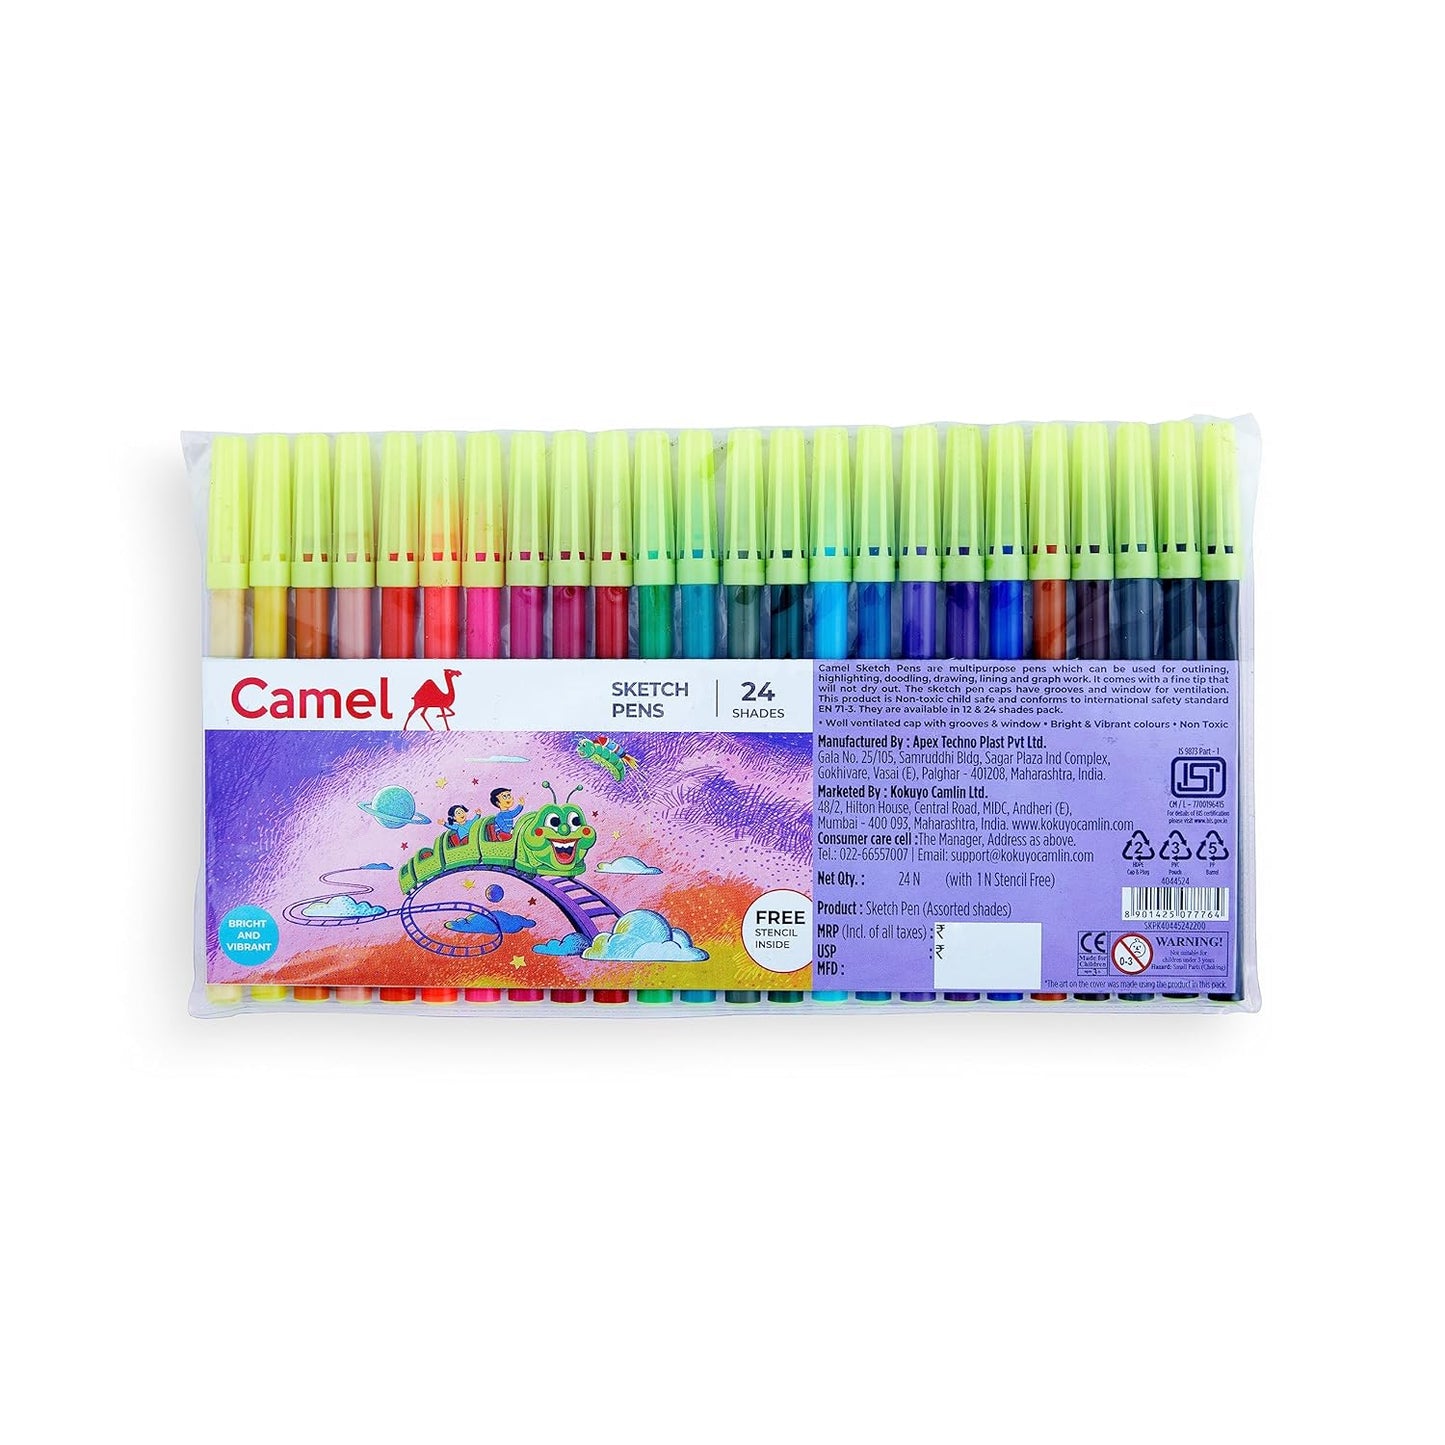 Camlin Sketch Pens with Free Stencil - 24 Shades (Multicolor)